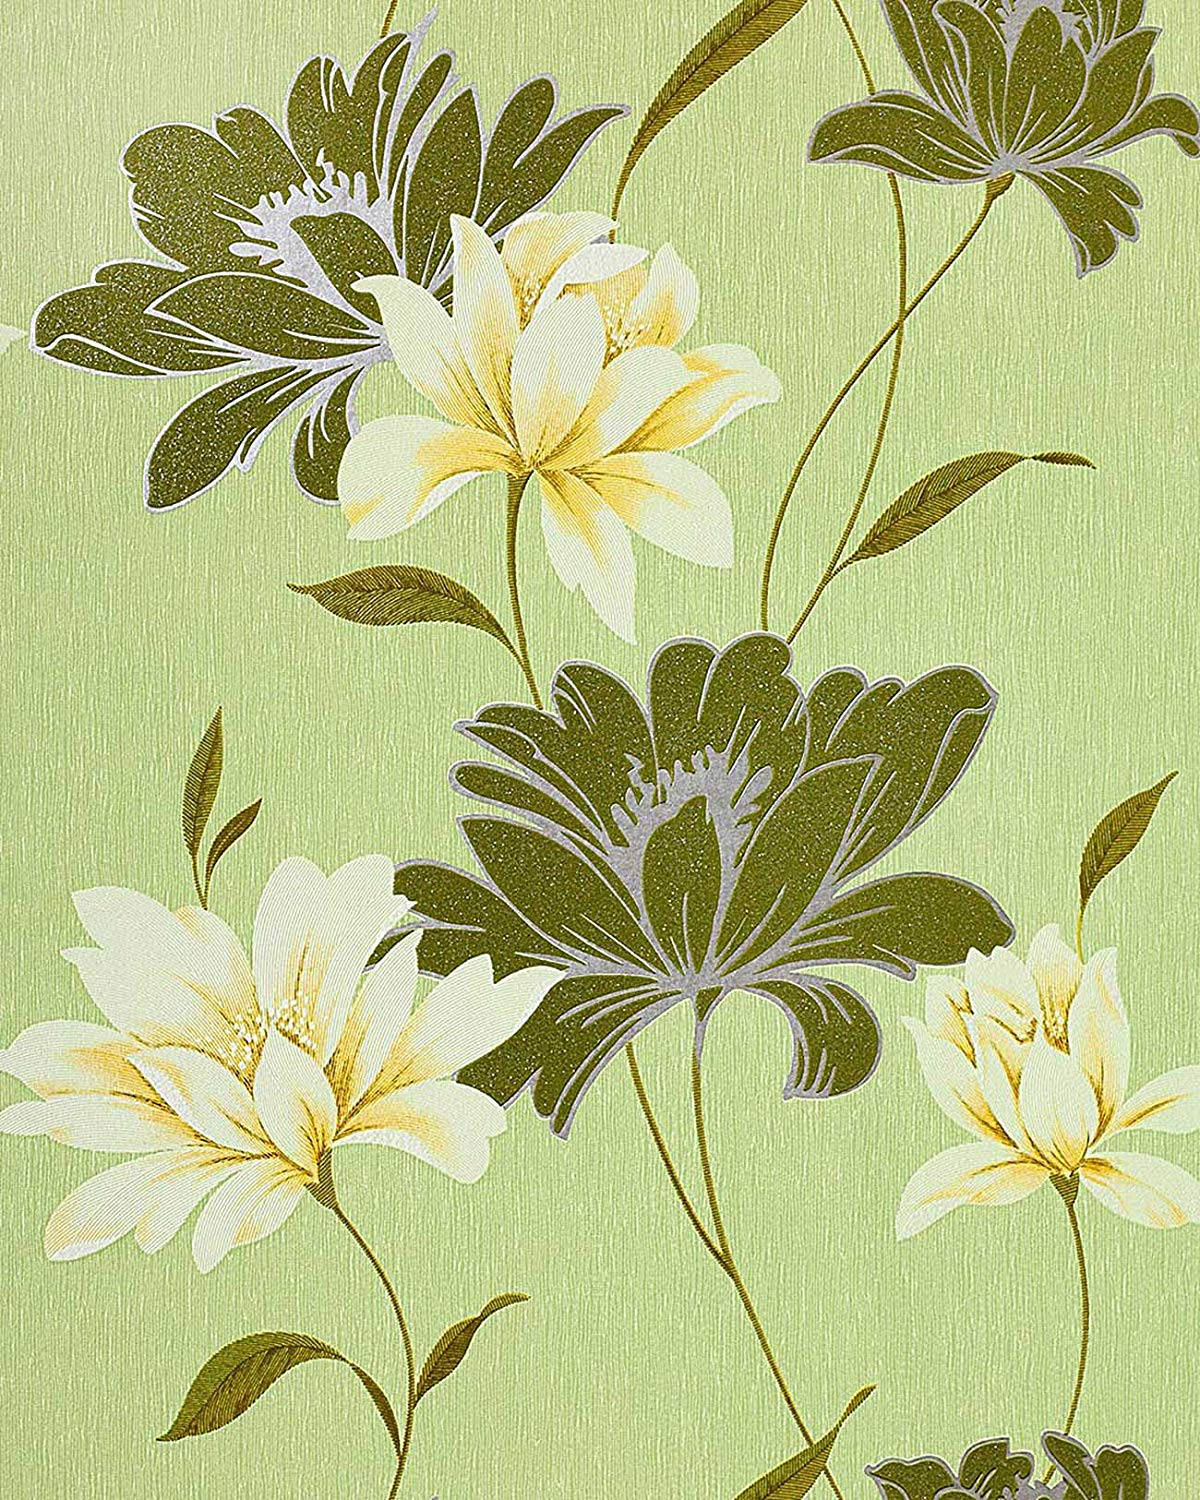 Grüneblumenweiße Blume Wallpaper